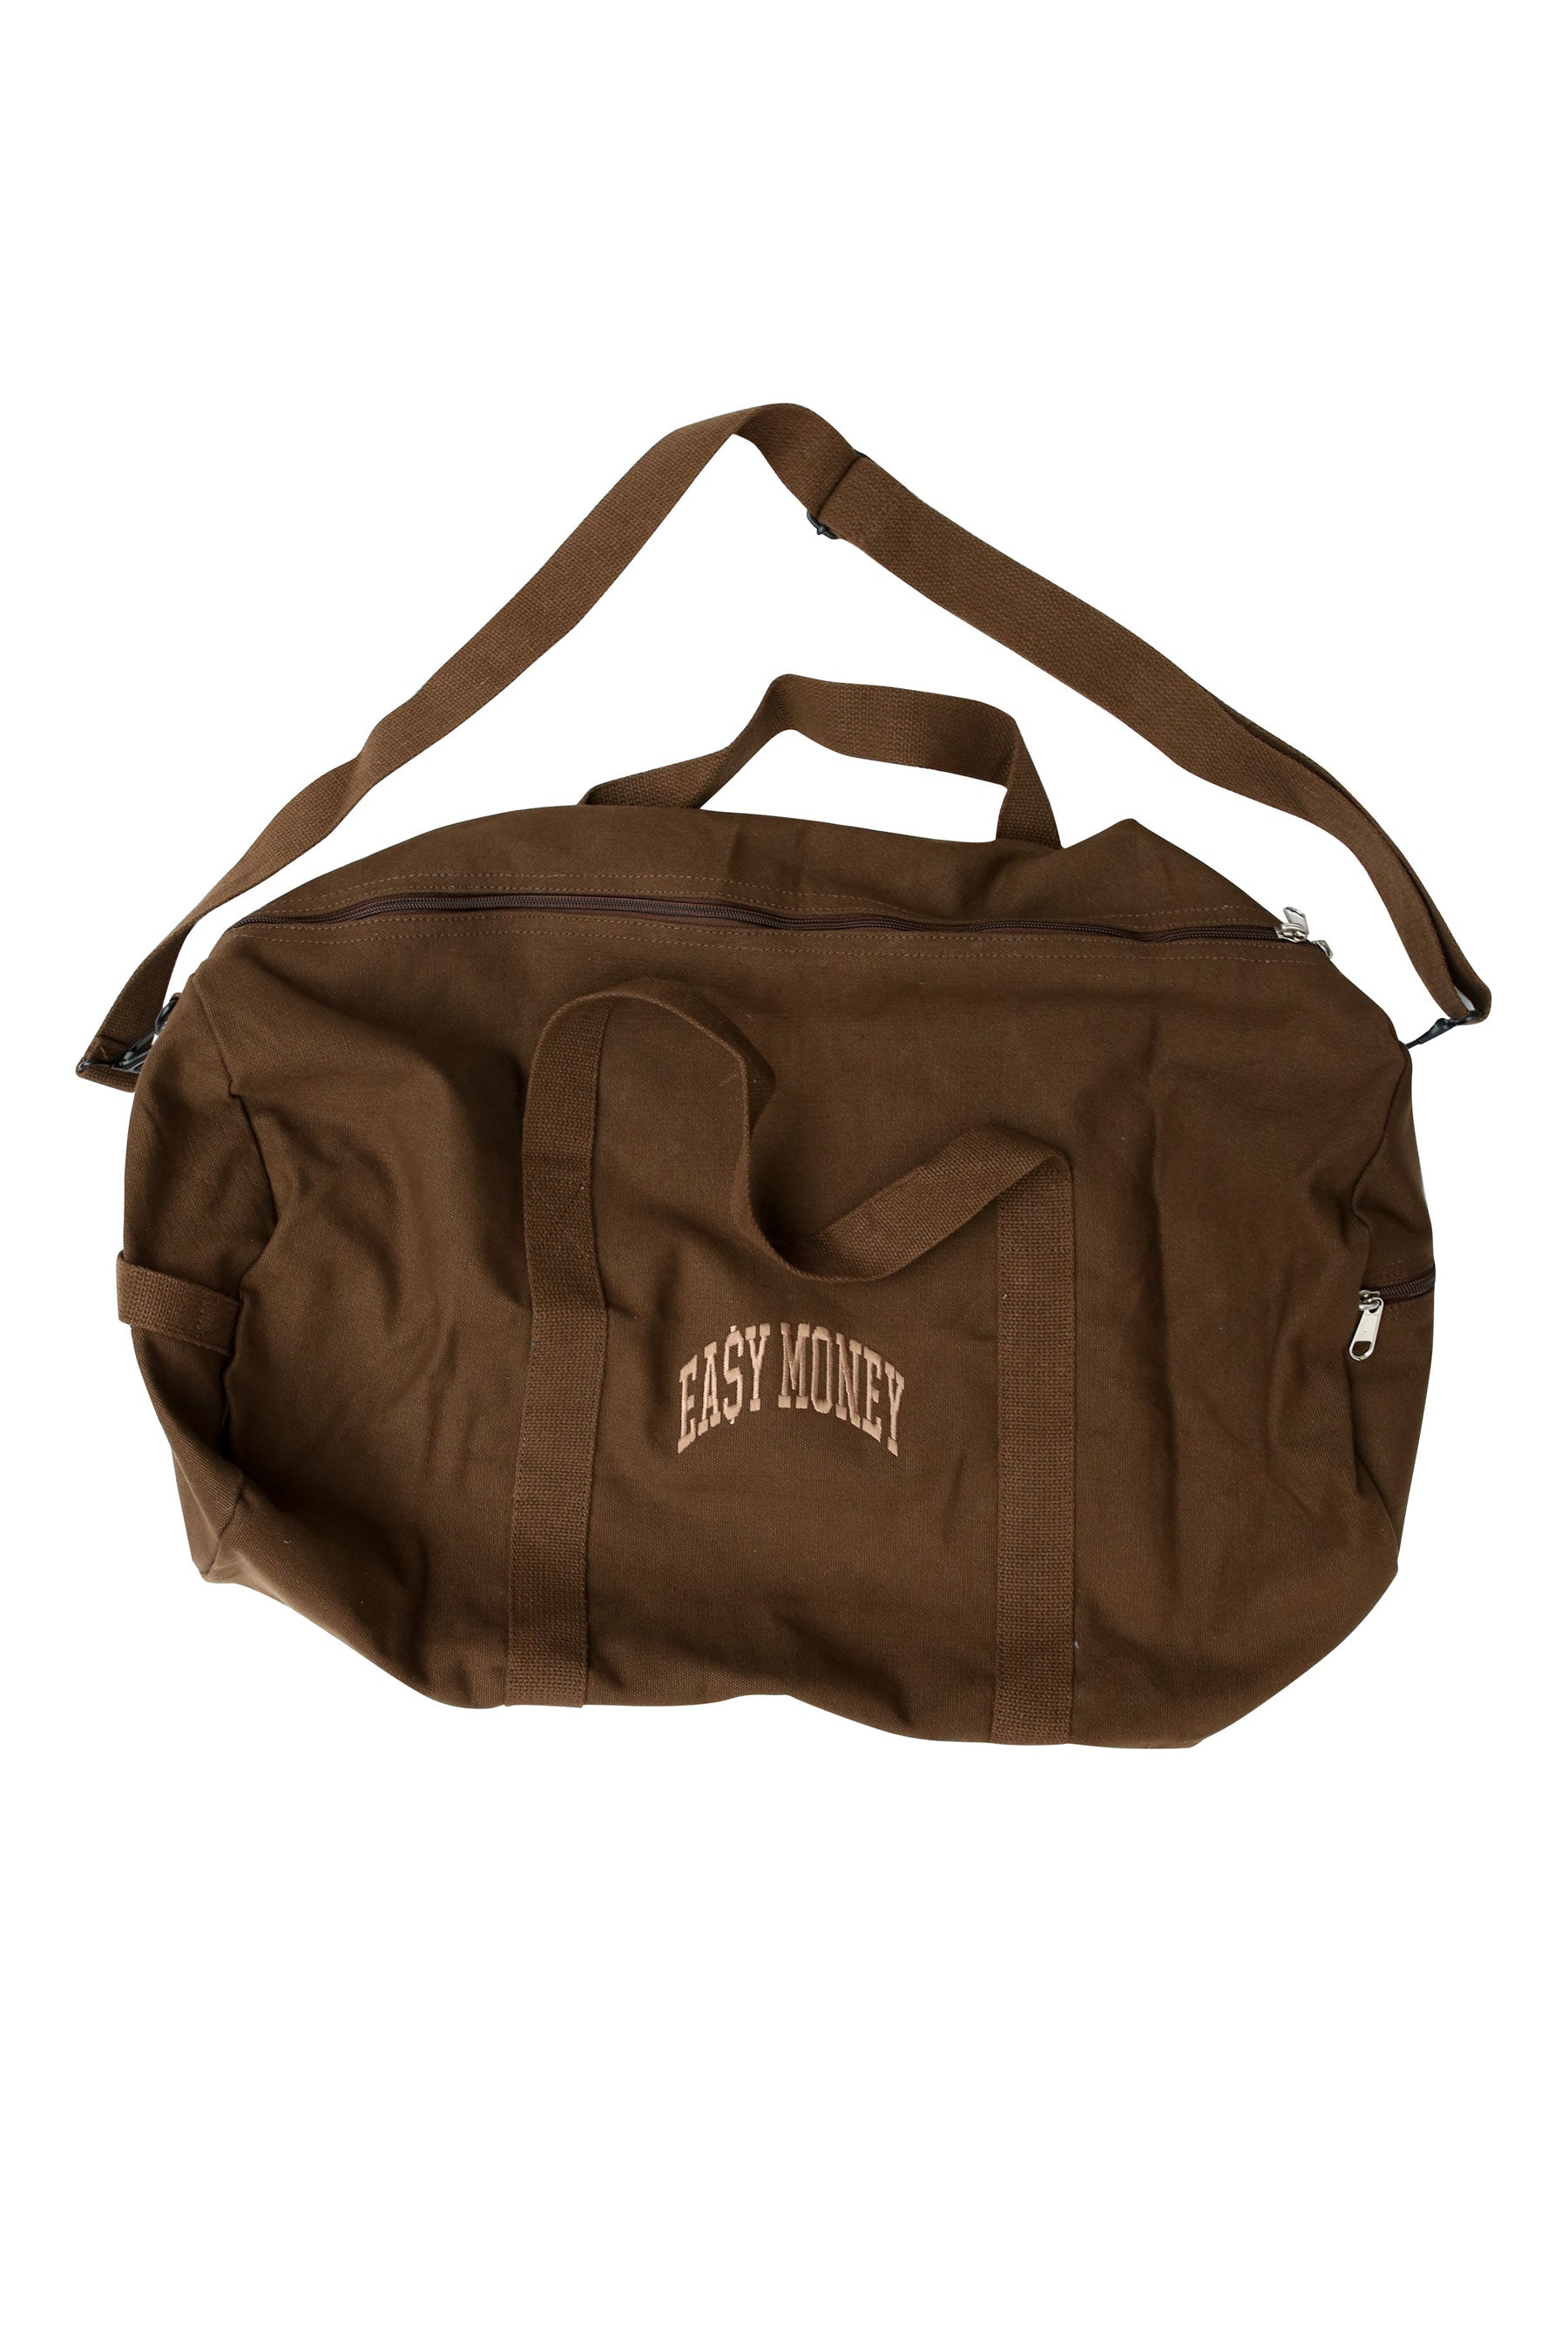 Brown EA$Y Duffle Bag